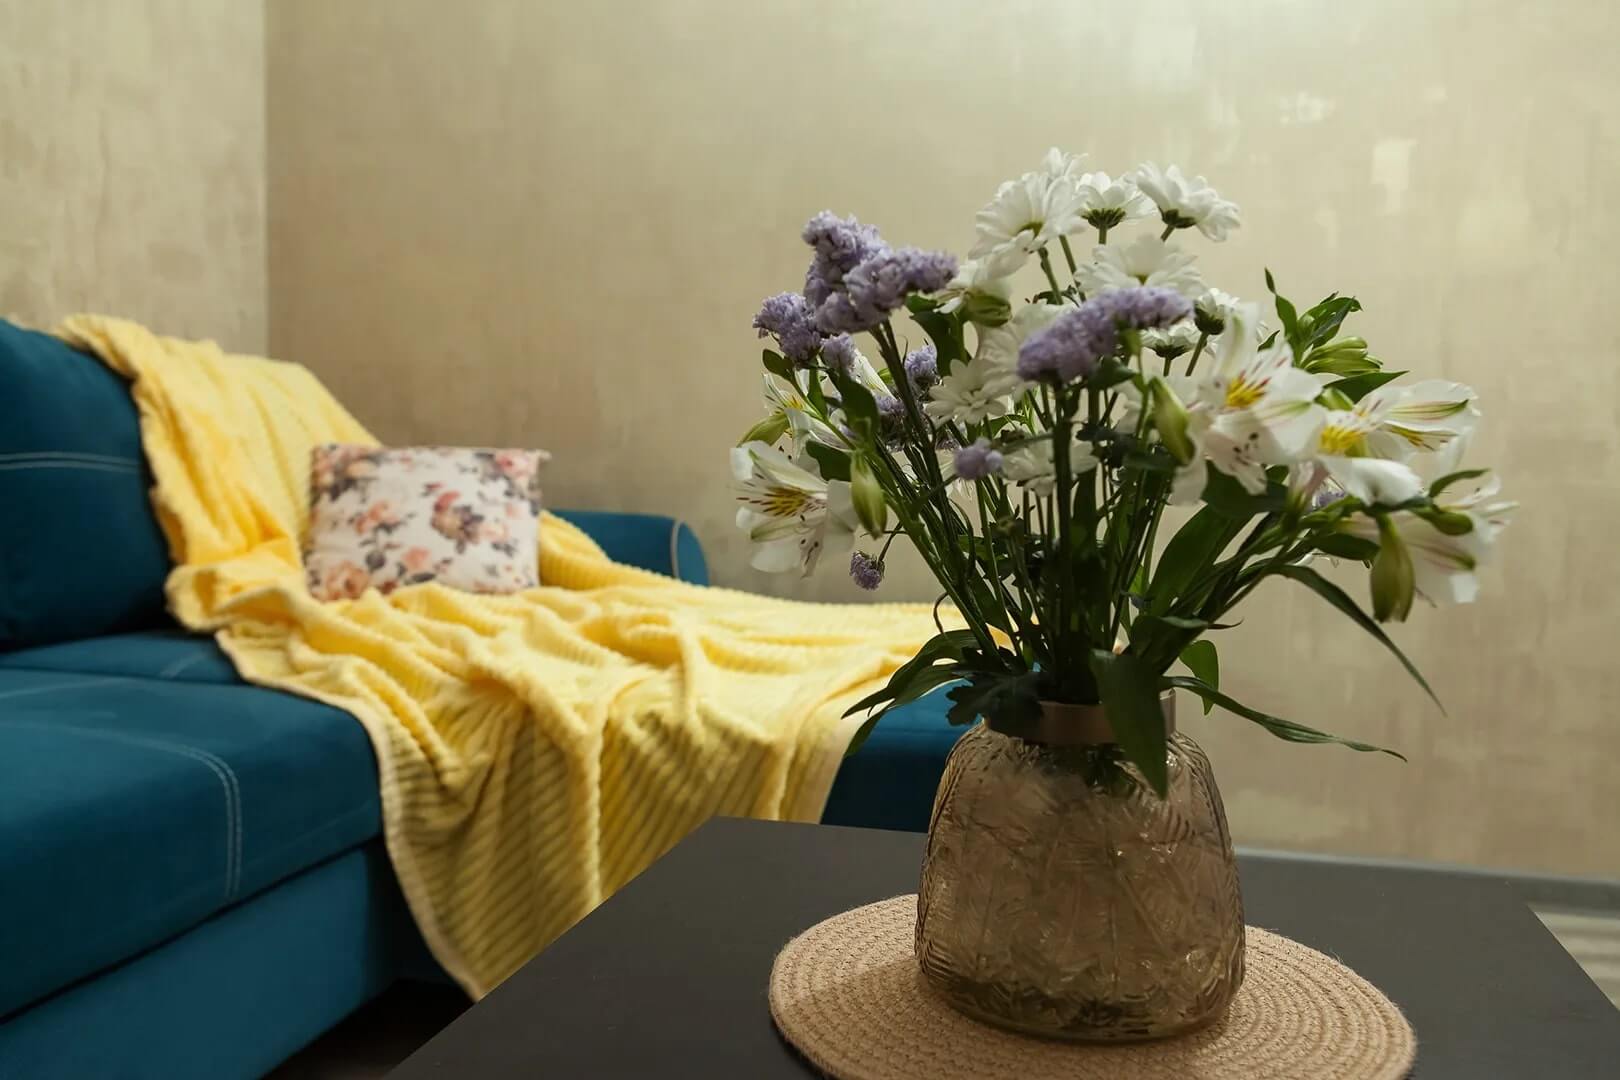 На столике возле дивана всегда стоит ваза со свежими цветами.